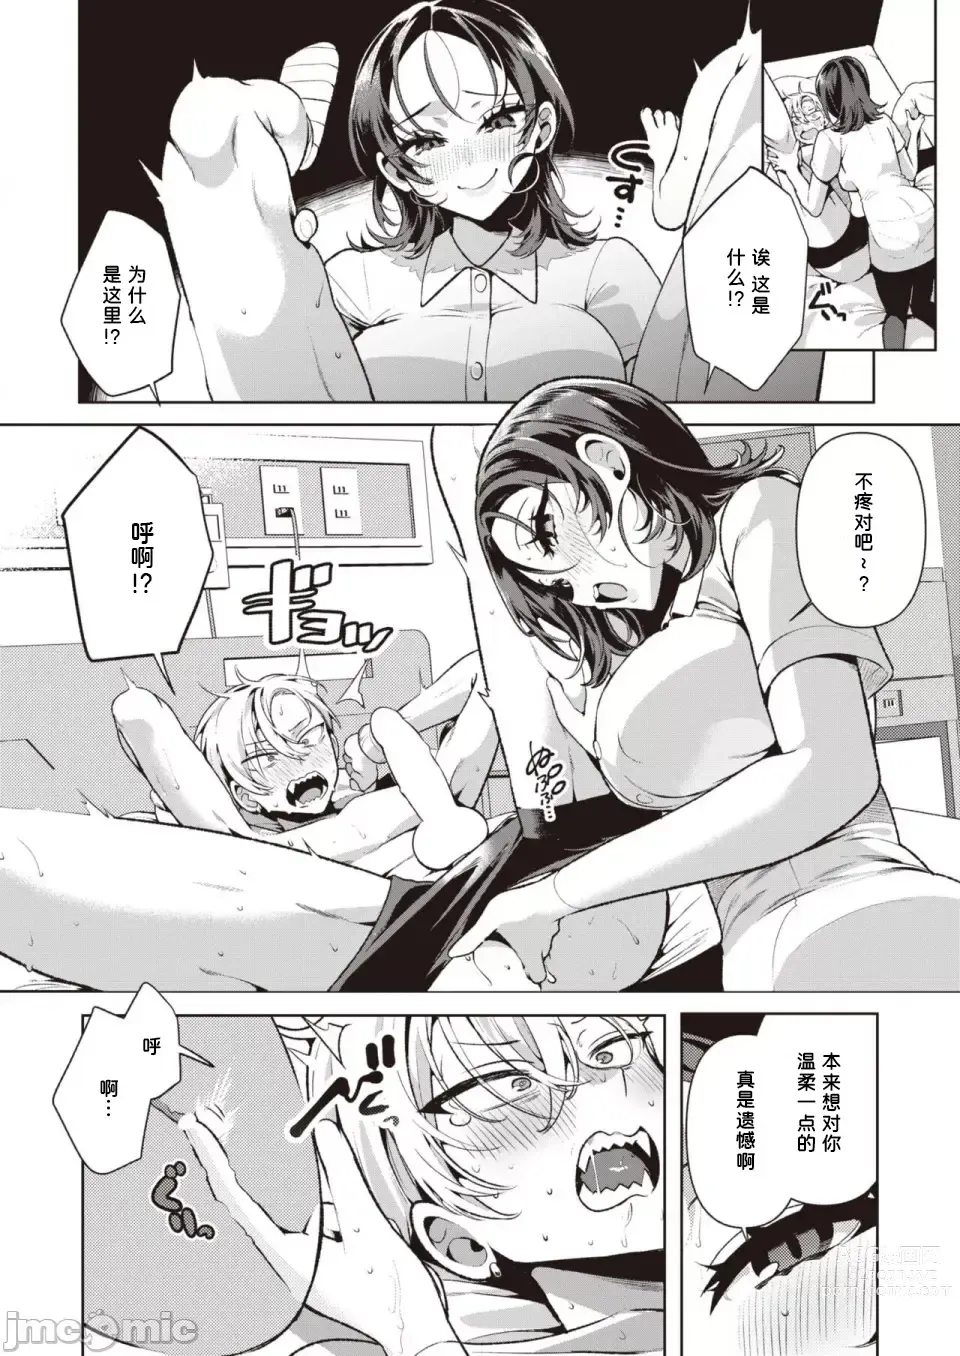 Page 14 of manga Yasashii? Nurse no Kirishima-san